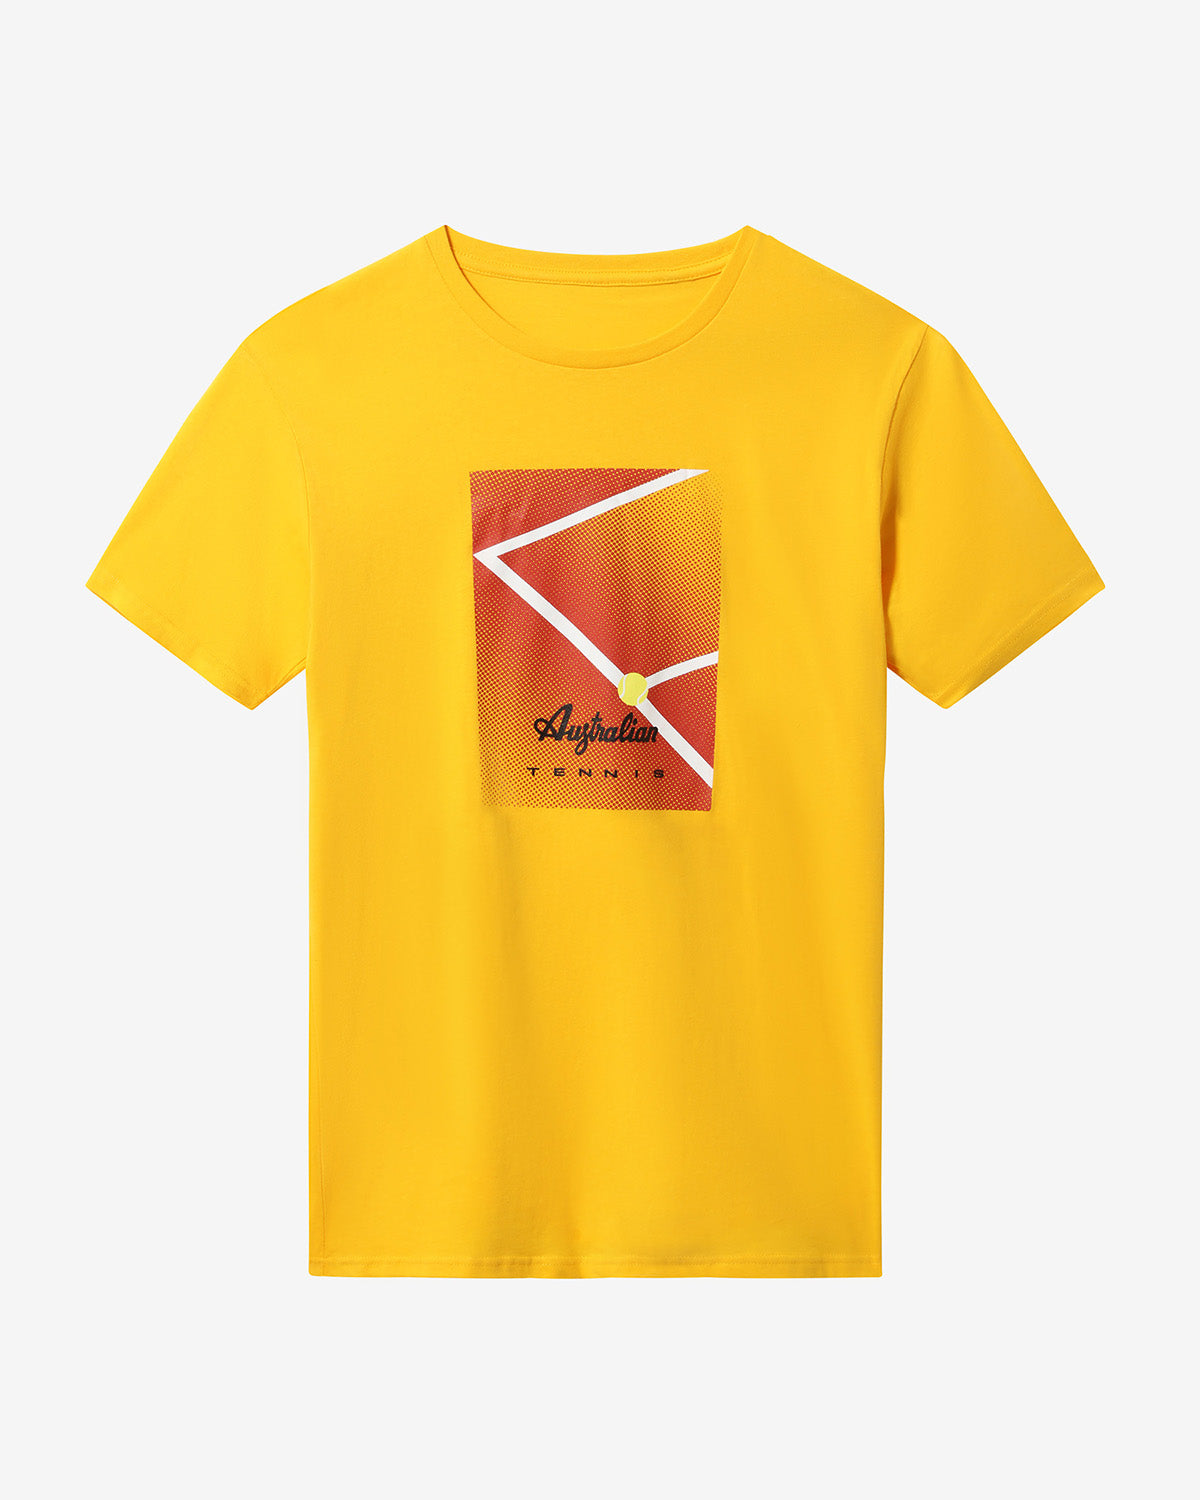 Court T-shirt: Australian Tennis 